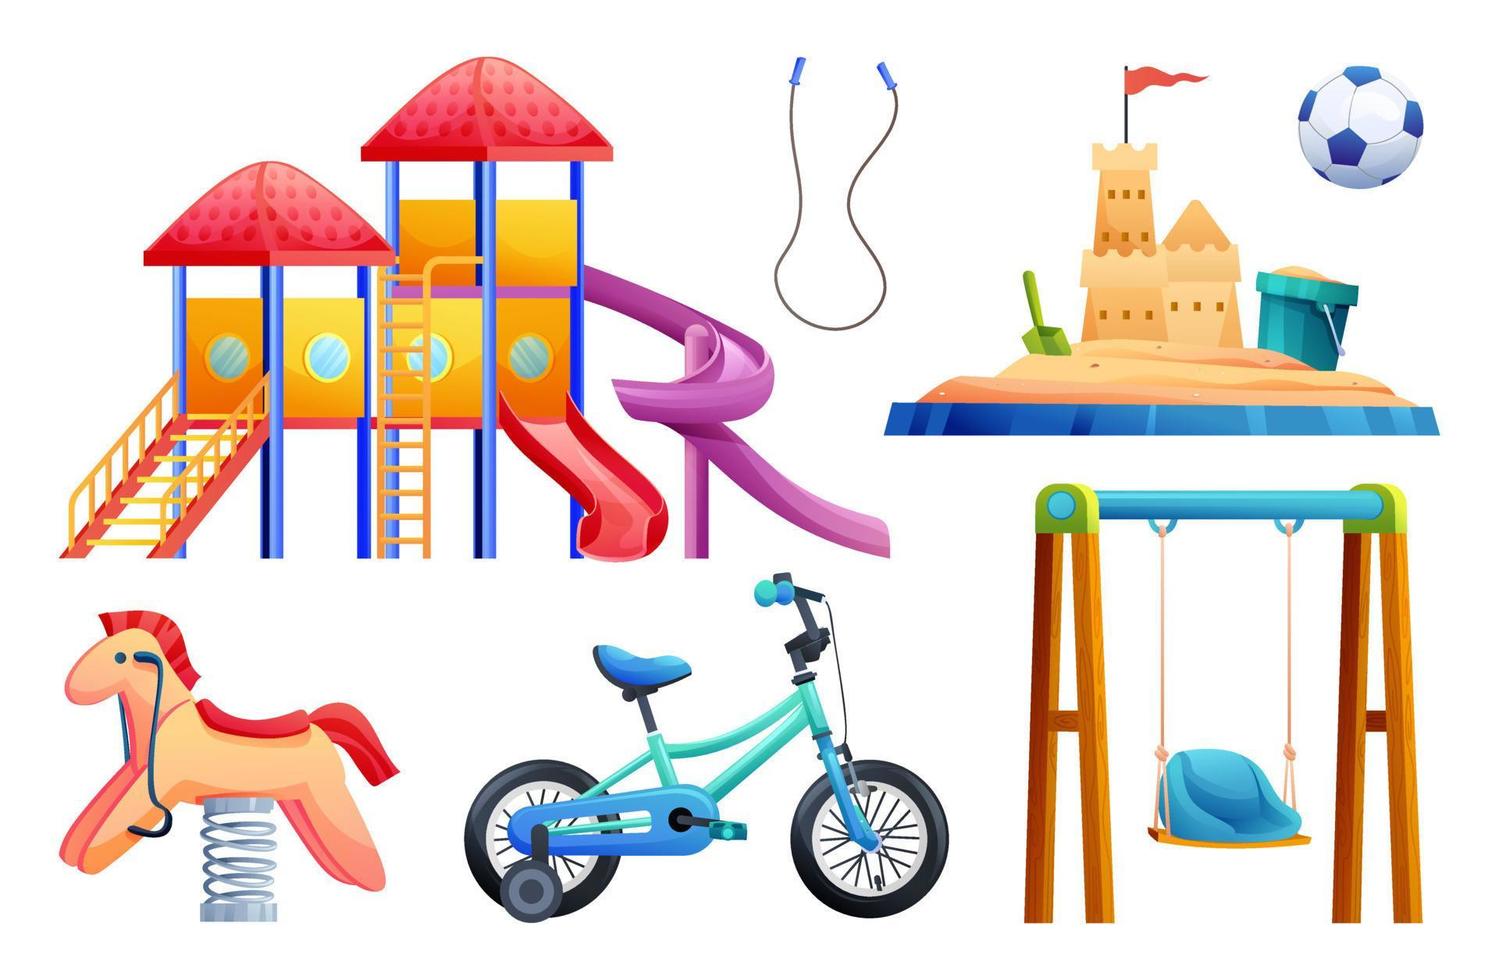 conjunto de equipamentos de playground infantil com slide, balanço, caixa de areia, bicicleta e brinquedos ilustração dos desenhos animados vetor